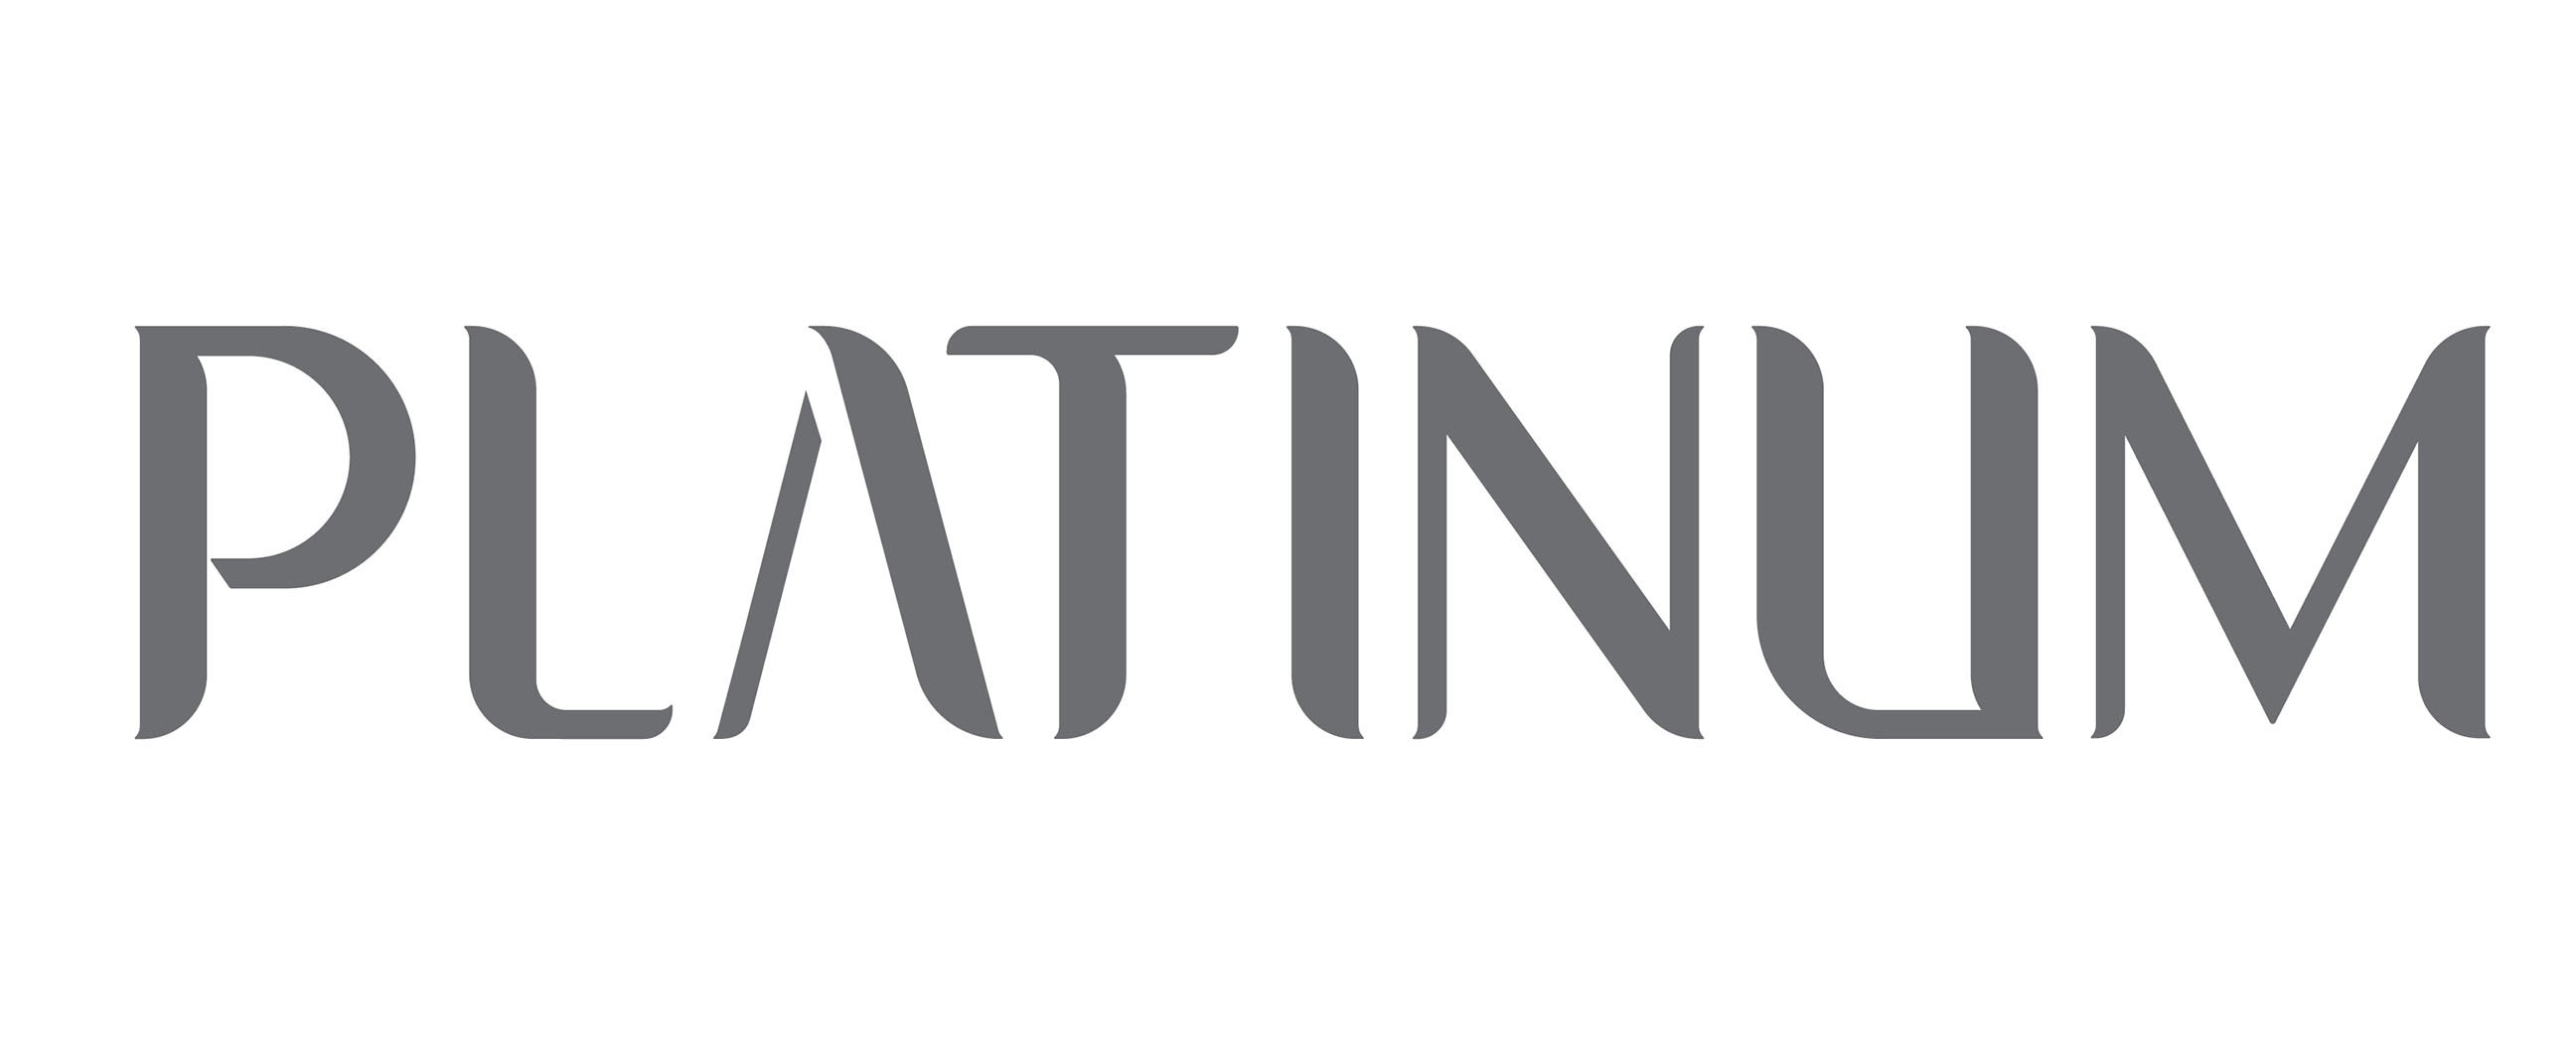 New logo wanted for platinum | Logo design contest | 99designs